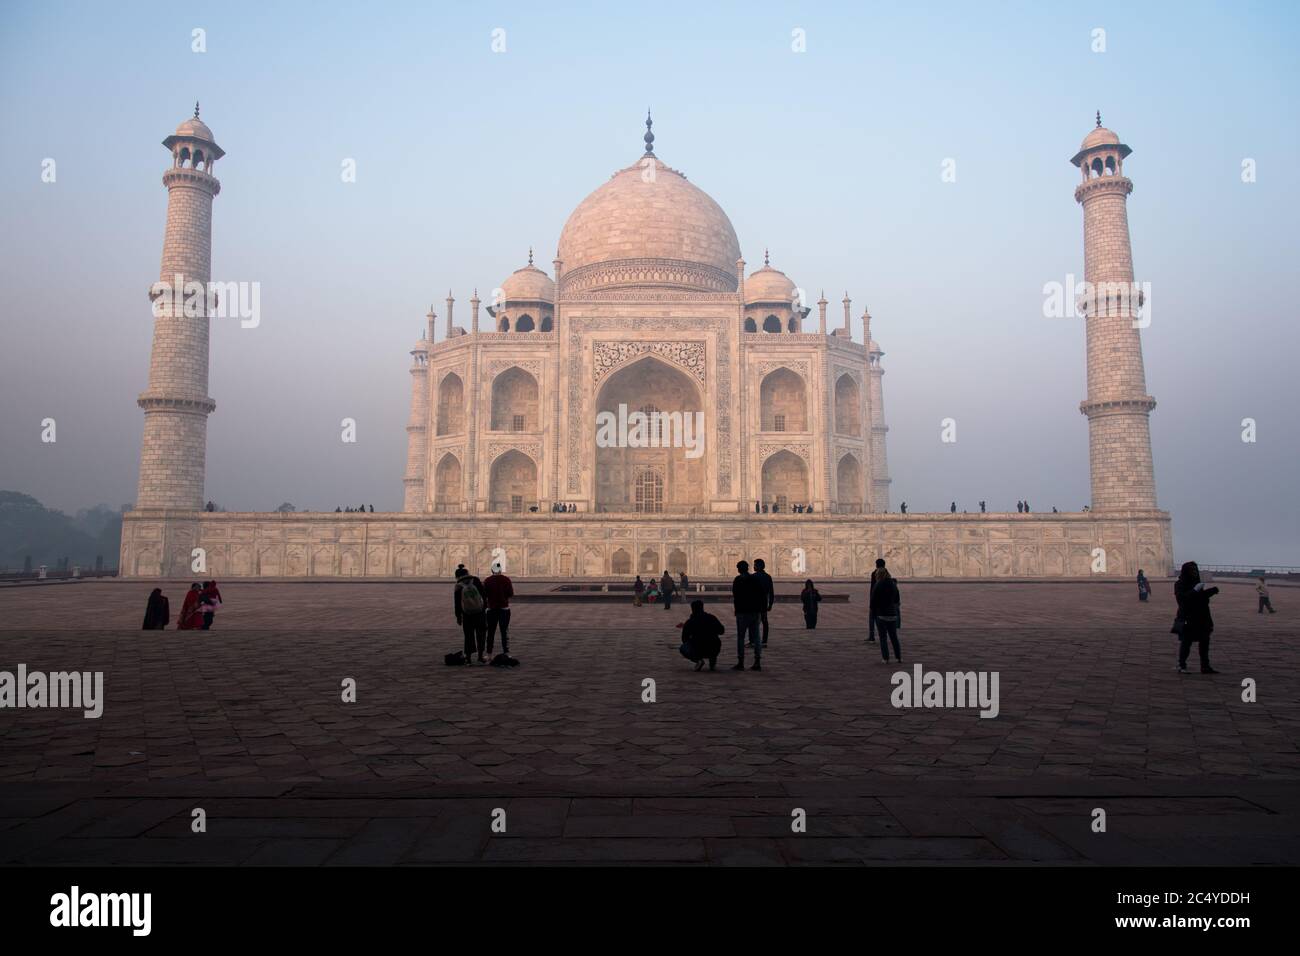 Taj Mahal. Un inmenso mausoleo de mármol blanco, construido en Agra entre 1631 y 1648 por orden del emperador mogol Shah Jahan en memoria de su favor Foto de stock